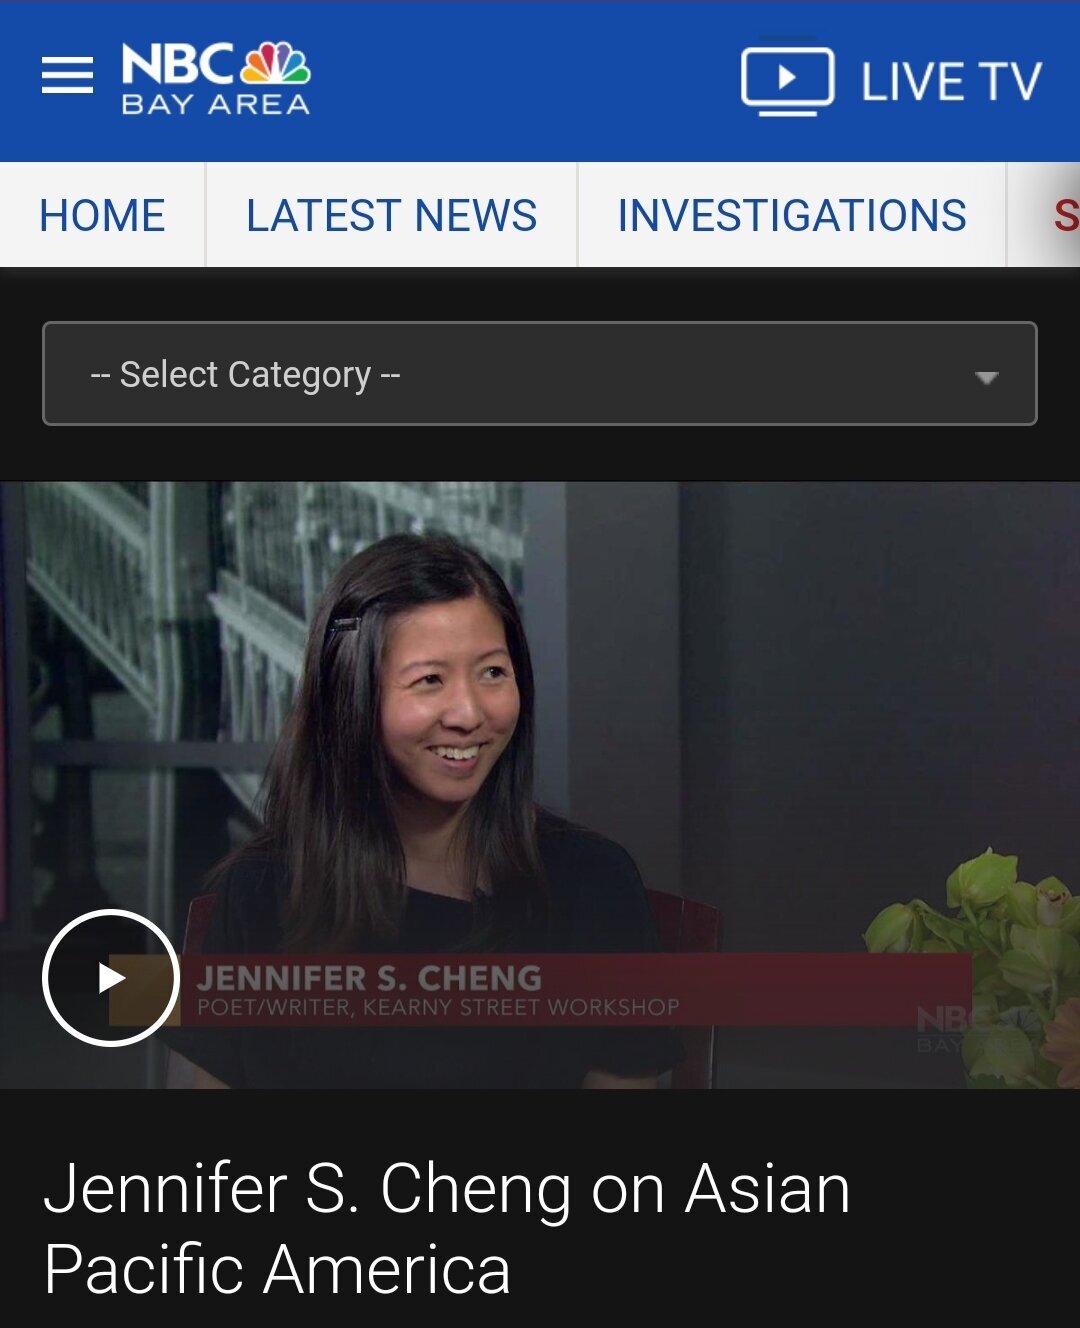   3:42/ 5:15  ShareExpand  Jennifer S. Cheng on Asian Pacific America